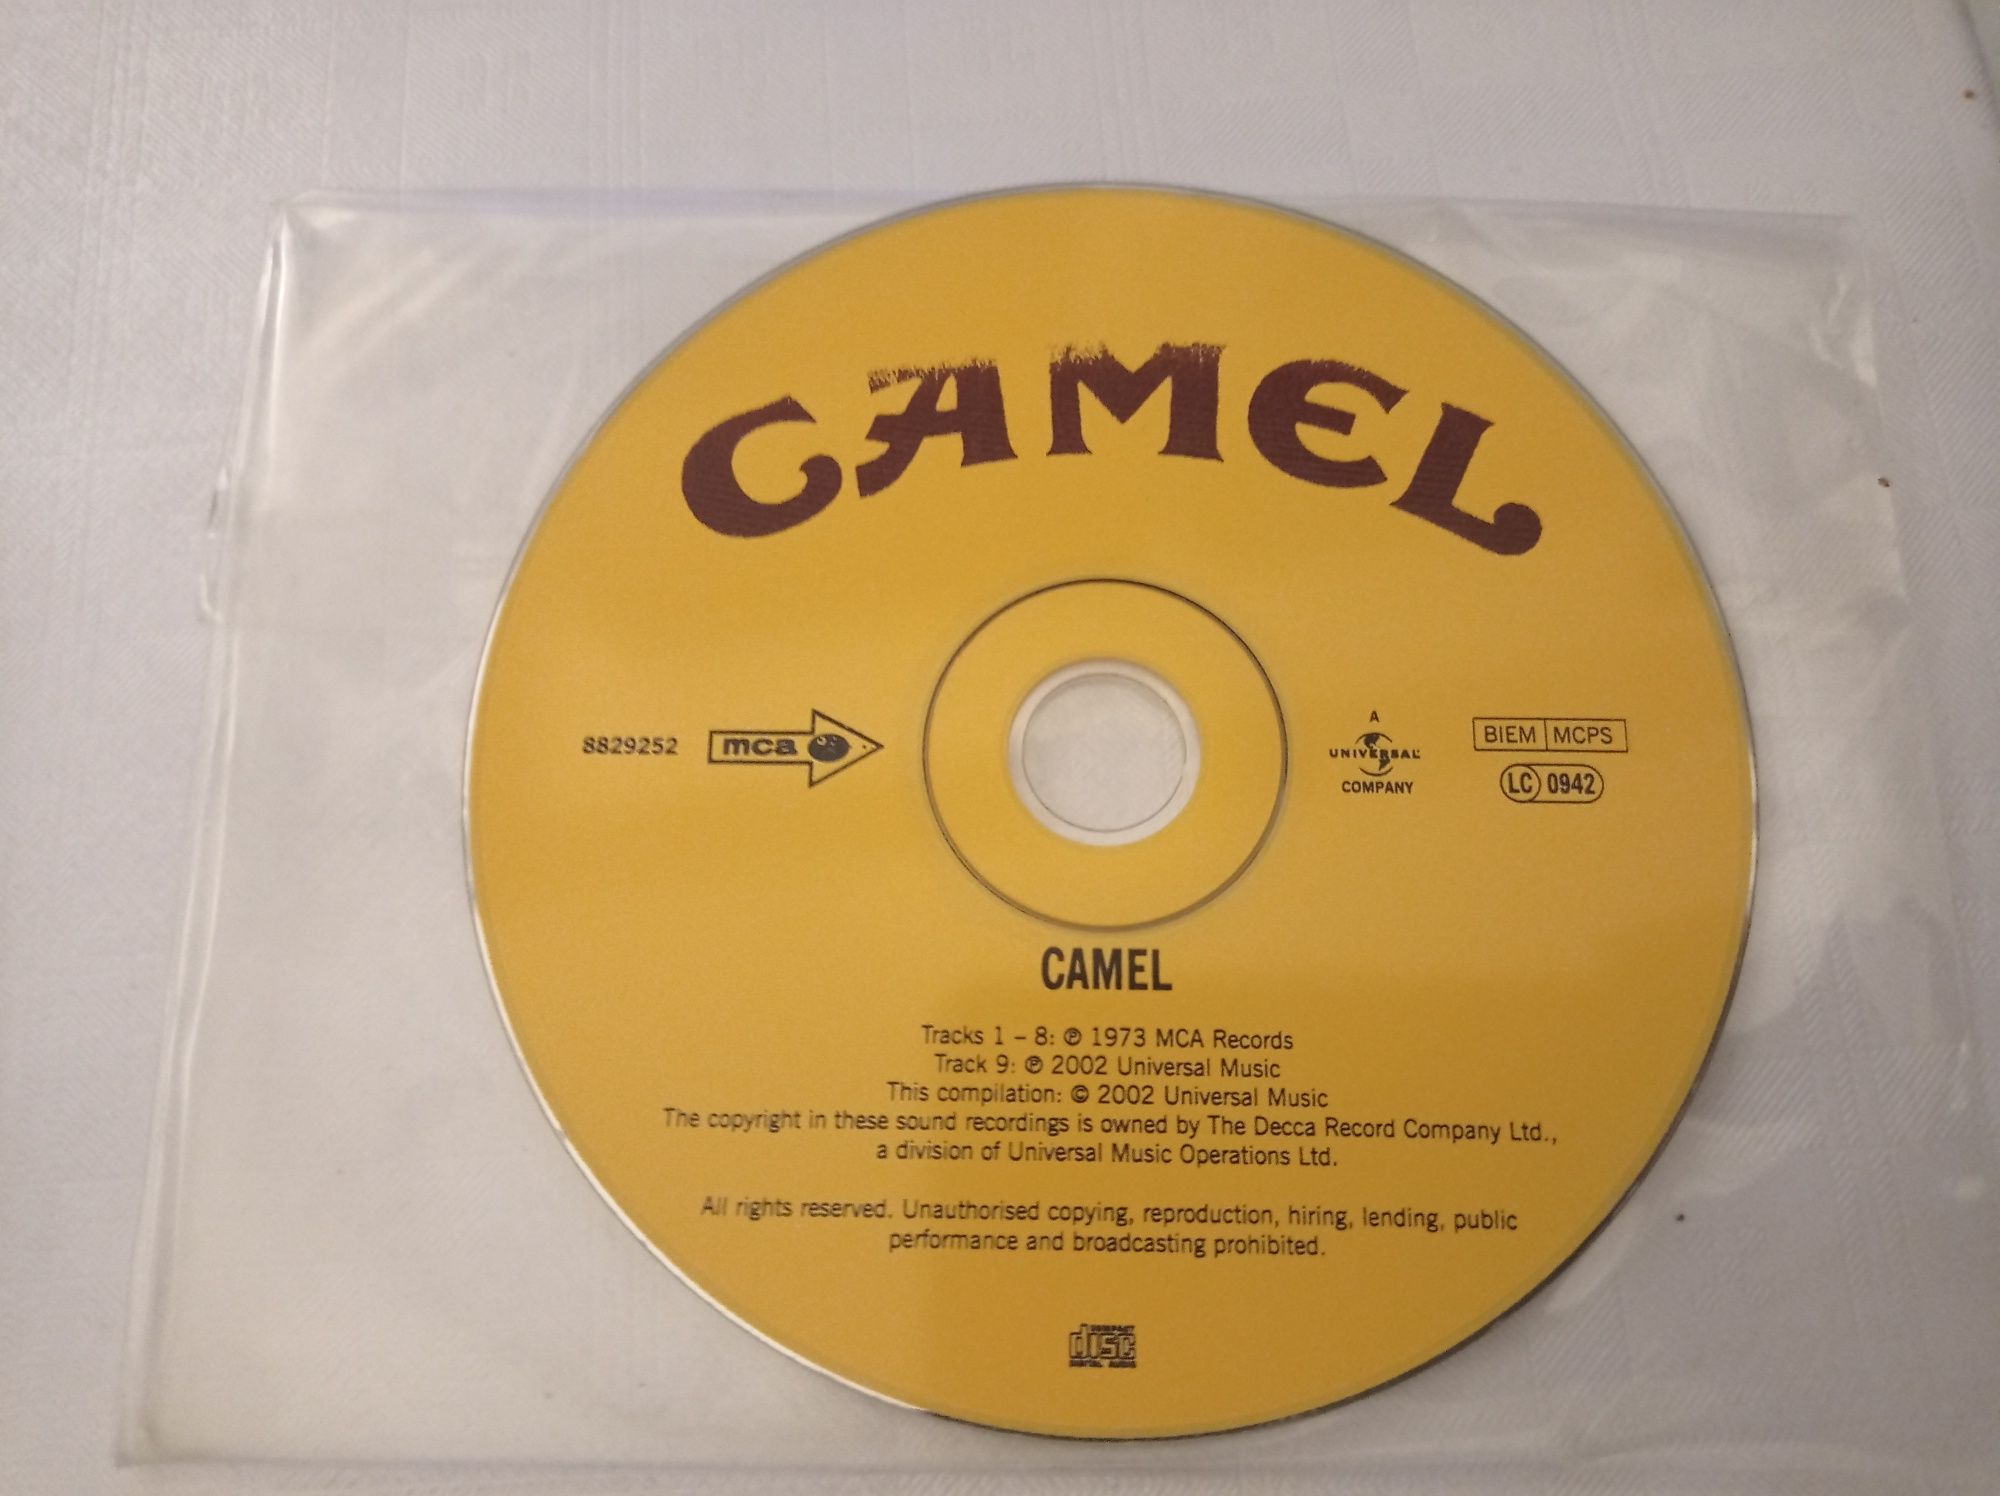 Camel - Camel płyta CD